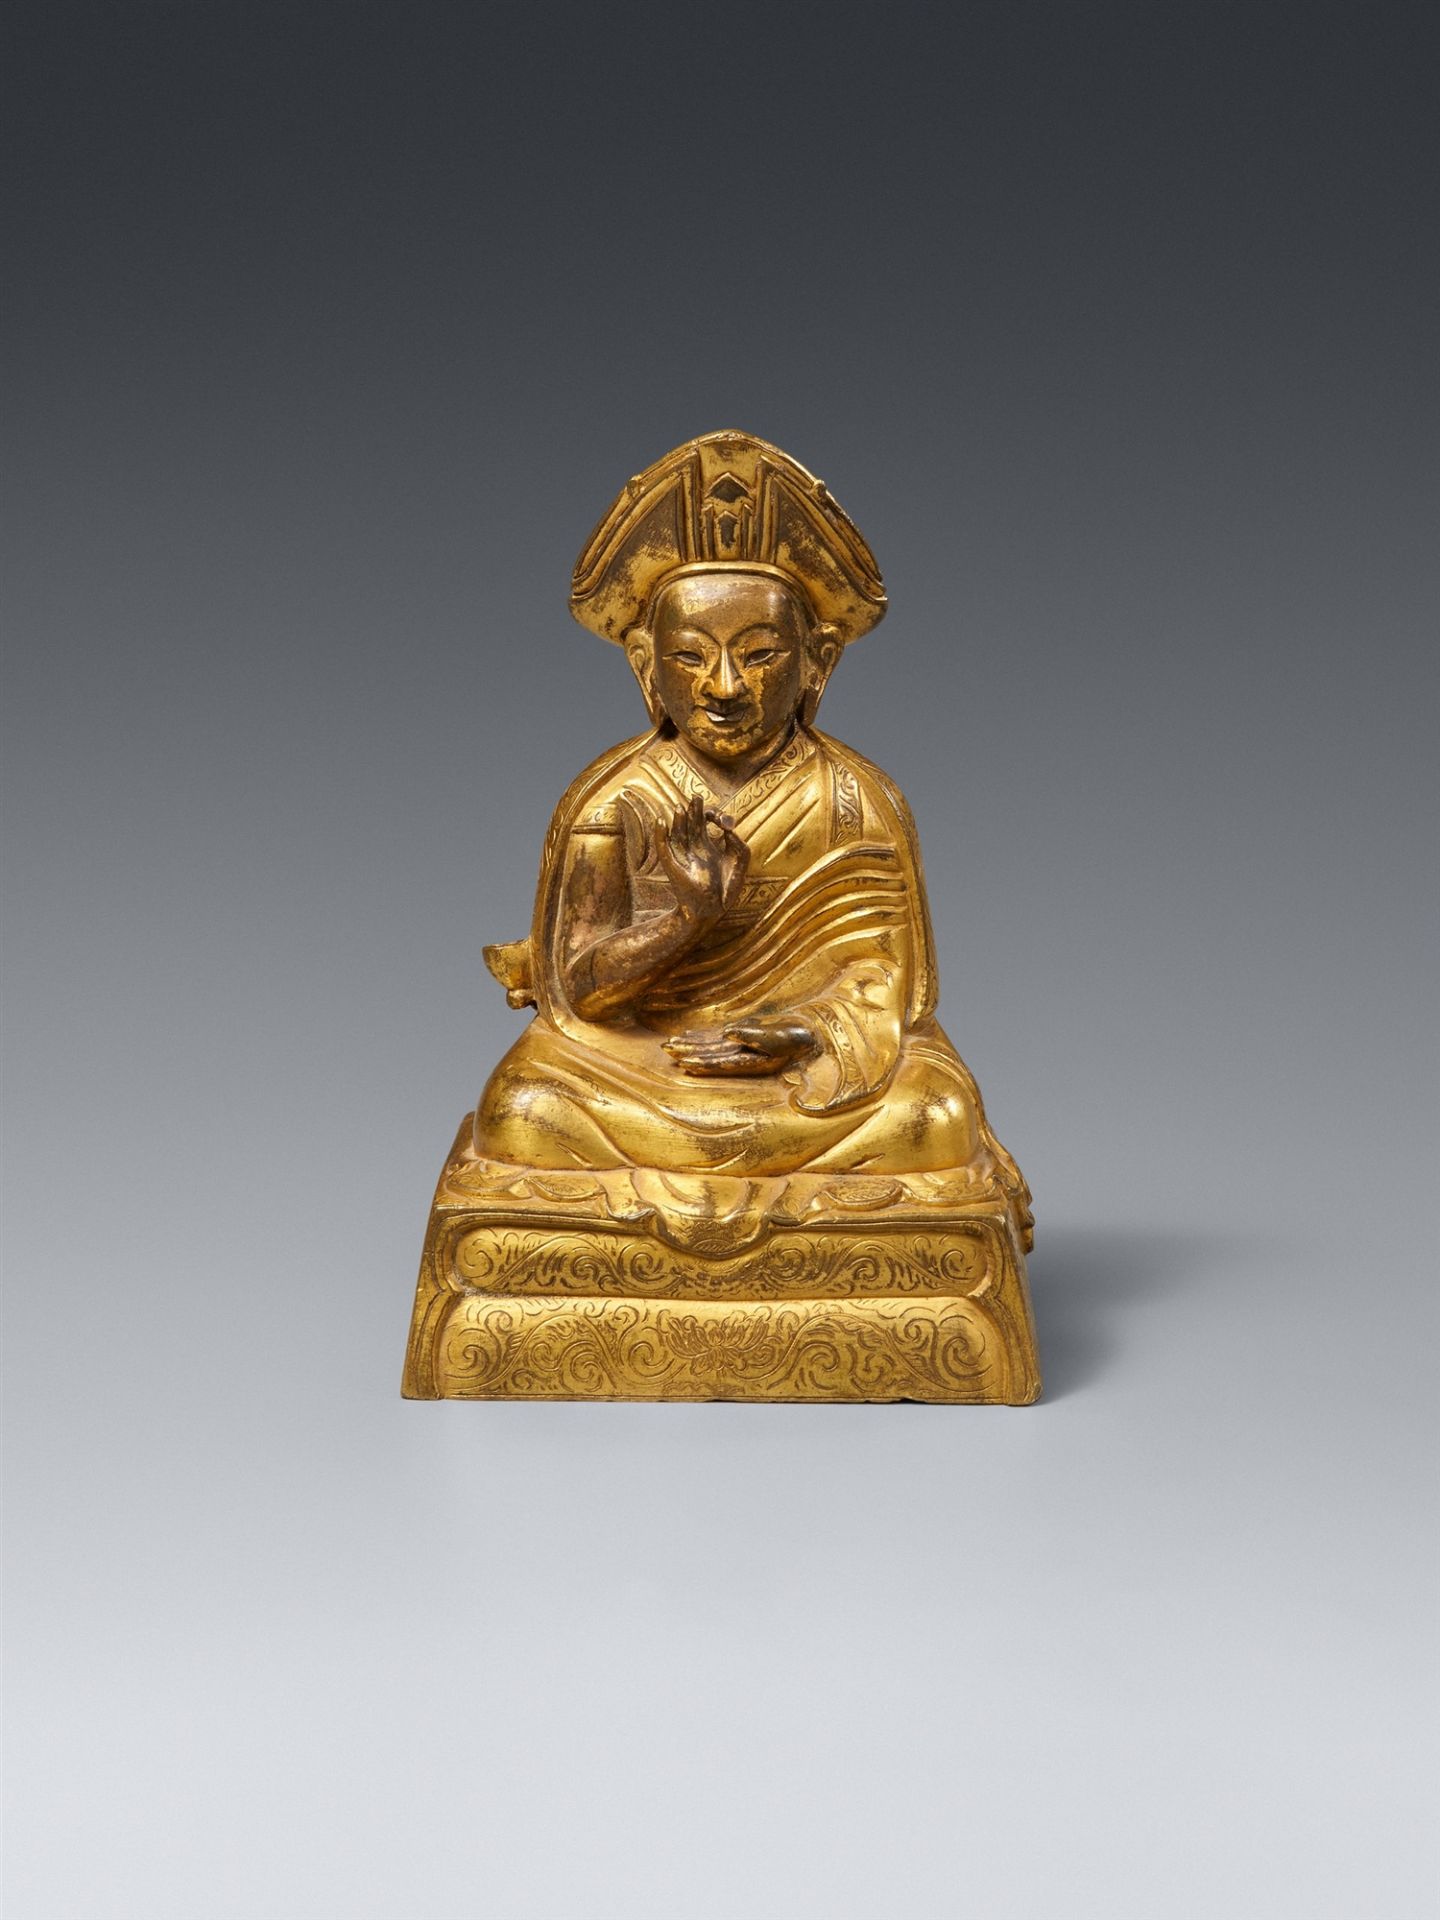 Changkya Rolpai Dorje. Bronze, vergoldet. Tibet, 2. Hälfte 18./19. Jh.